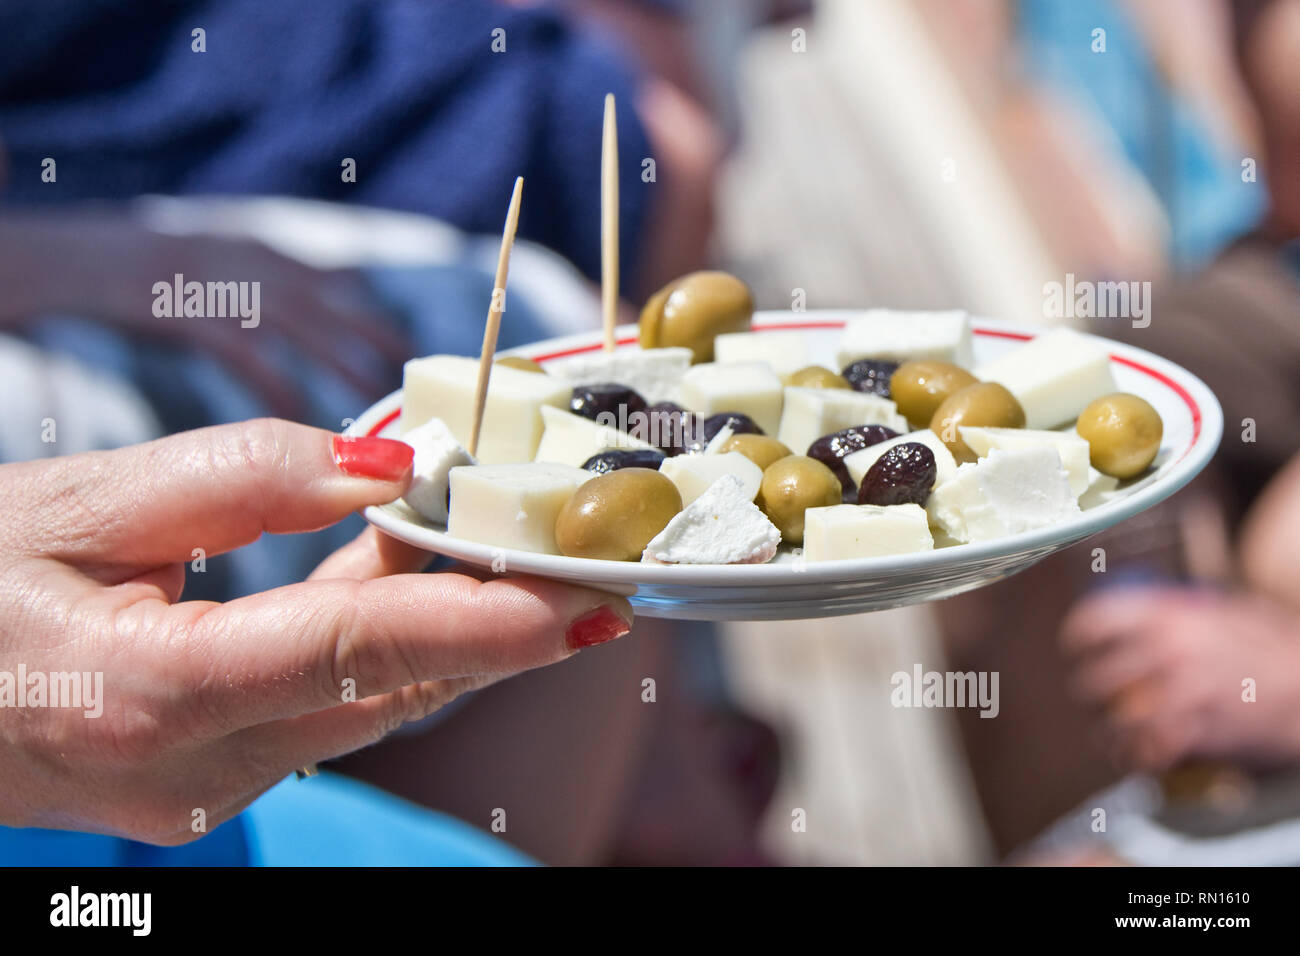 Femme main tenant une assiette de fromage feta et olivse lors d'une fête d'été Banque D'Images